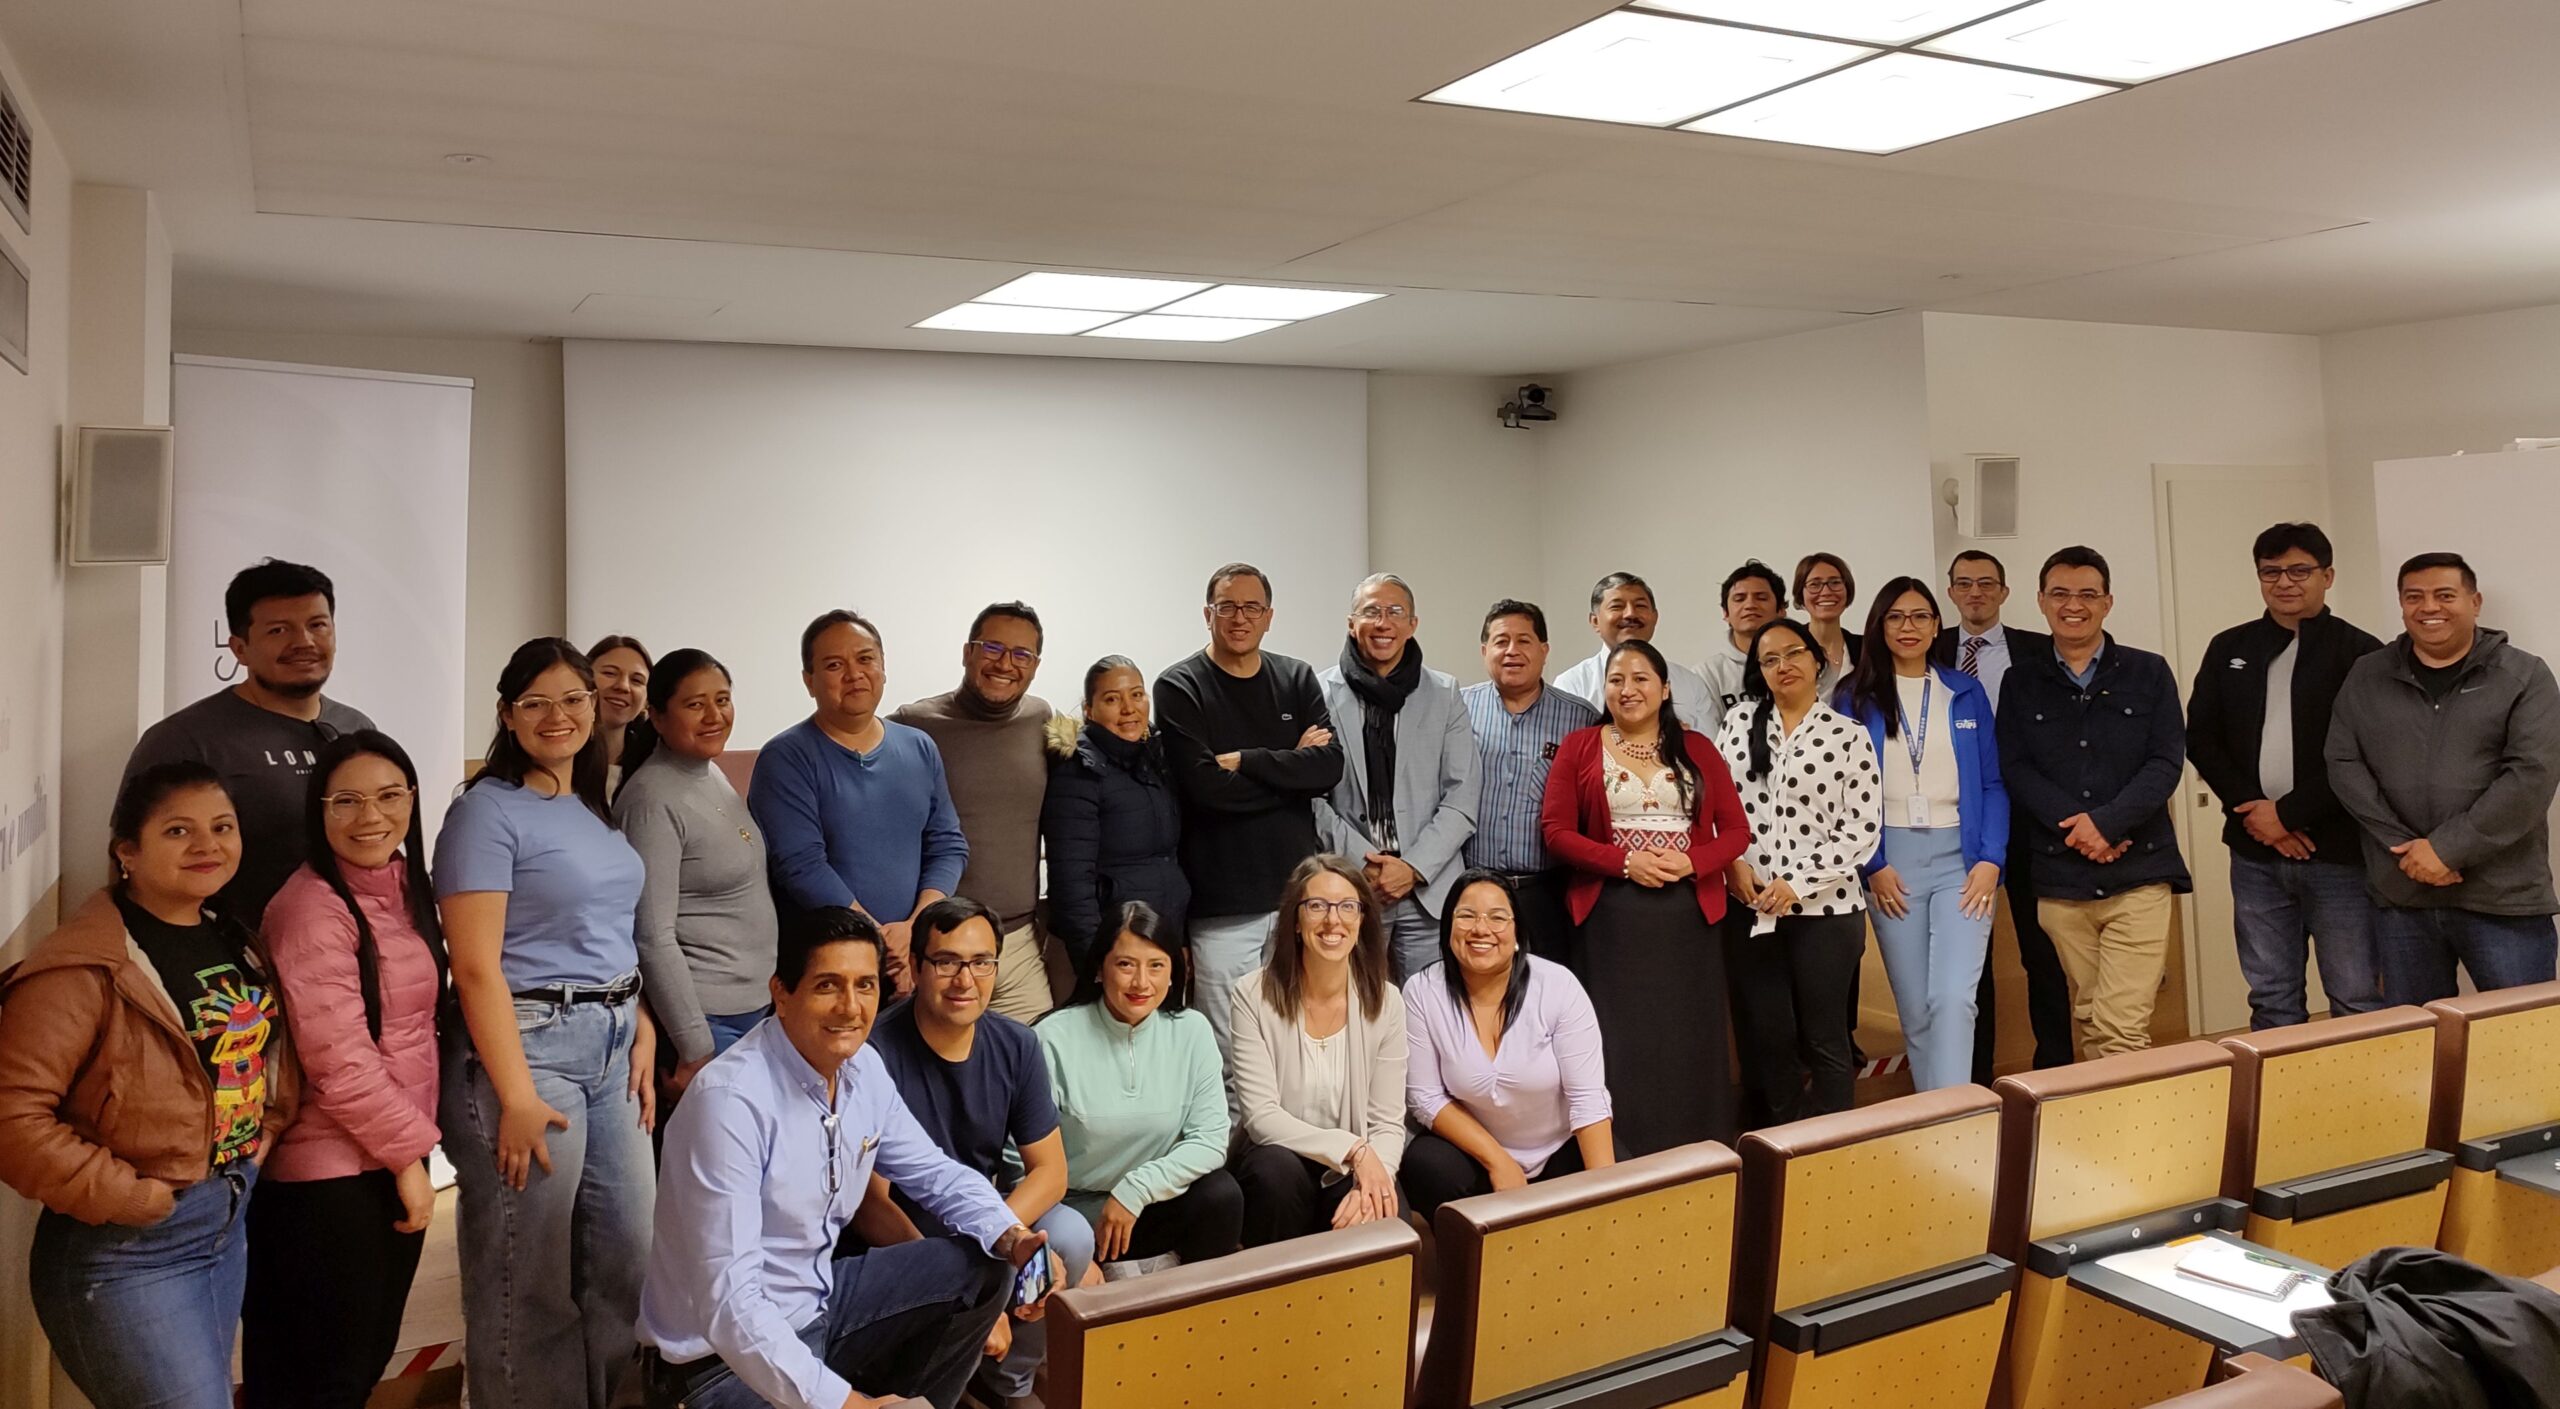 Dall’Ecuador a Trento: esperienza formativa sull’economia sociale e il credito cooperativo